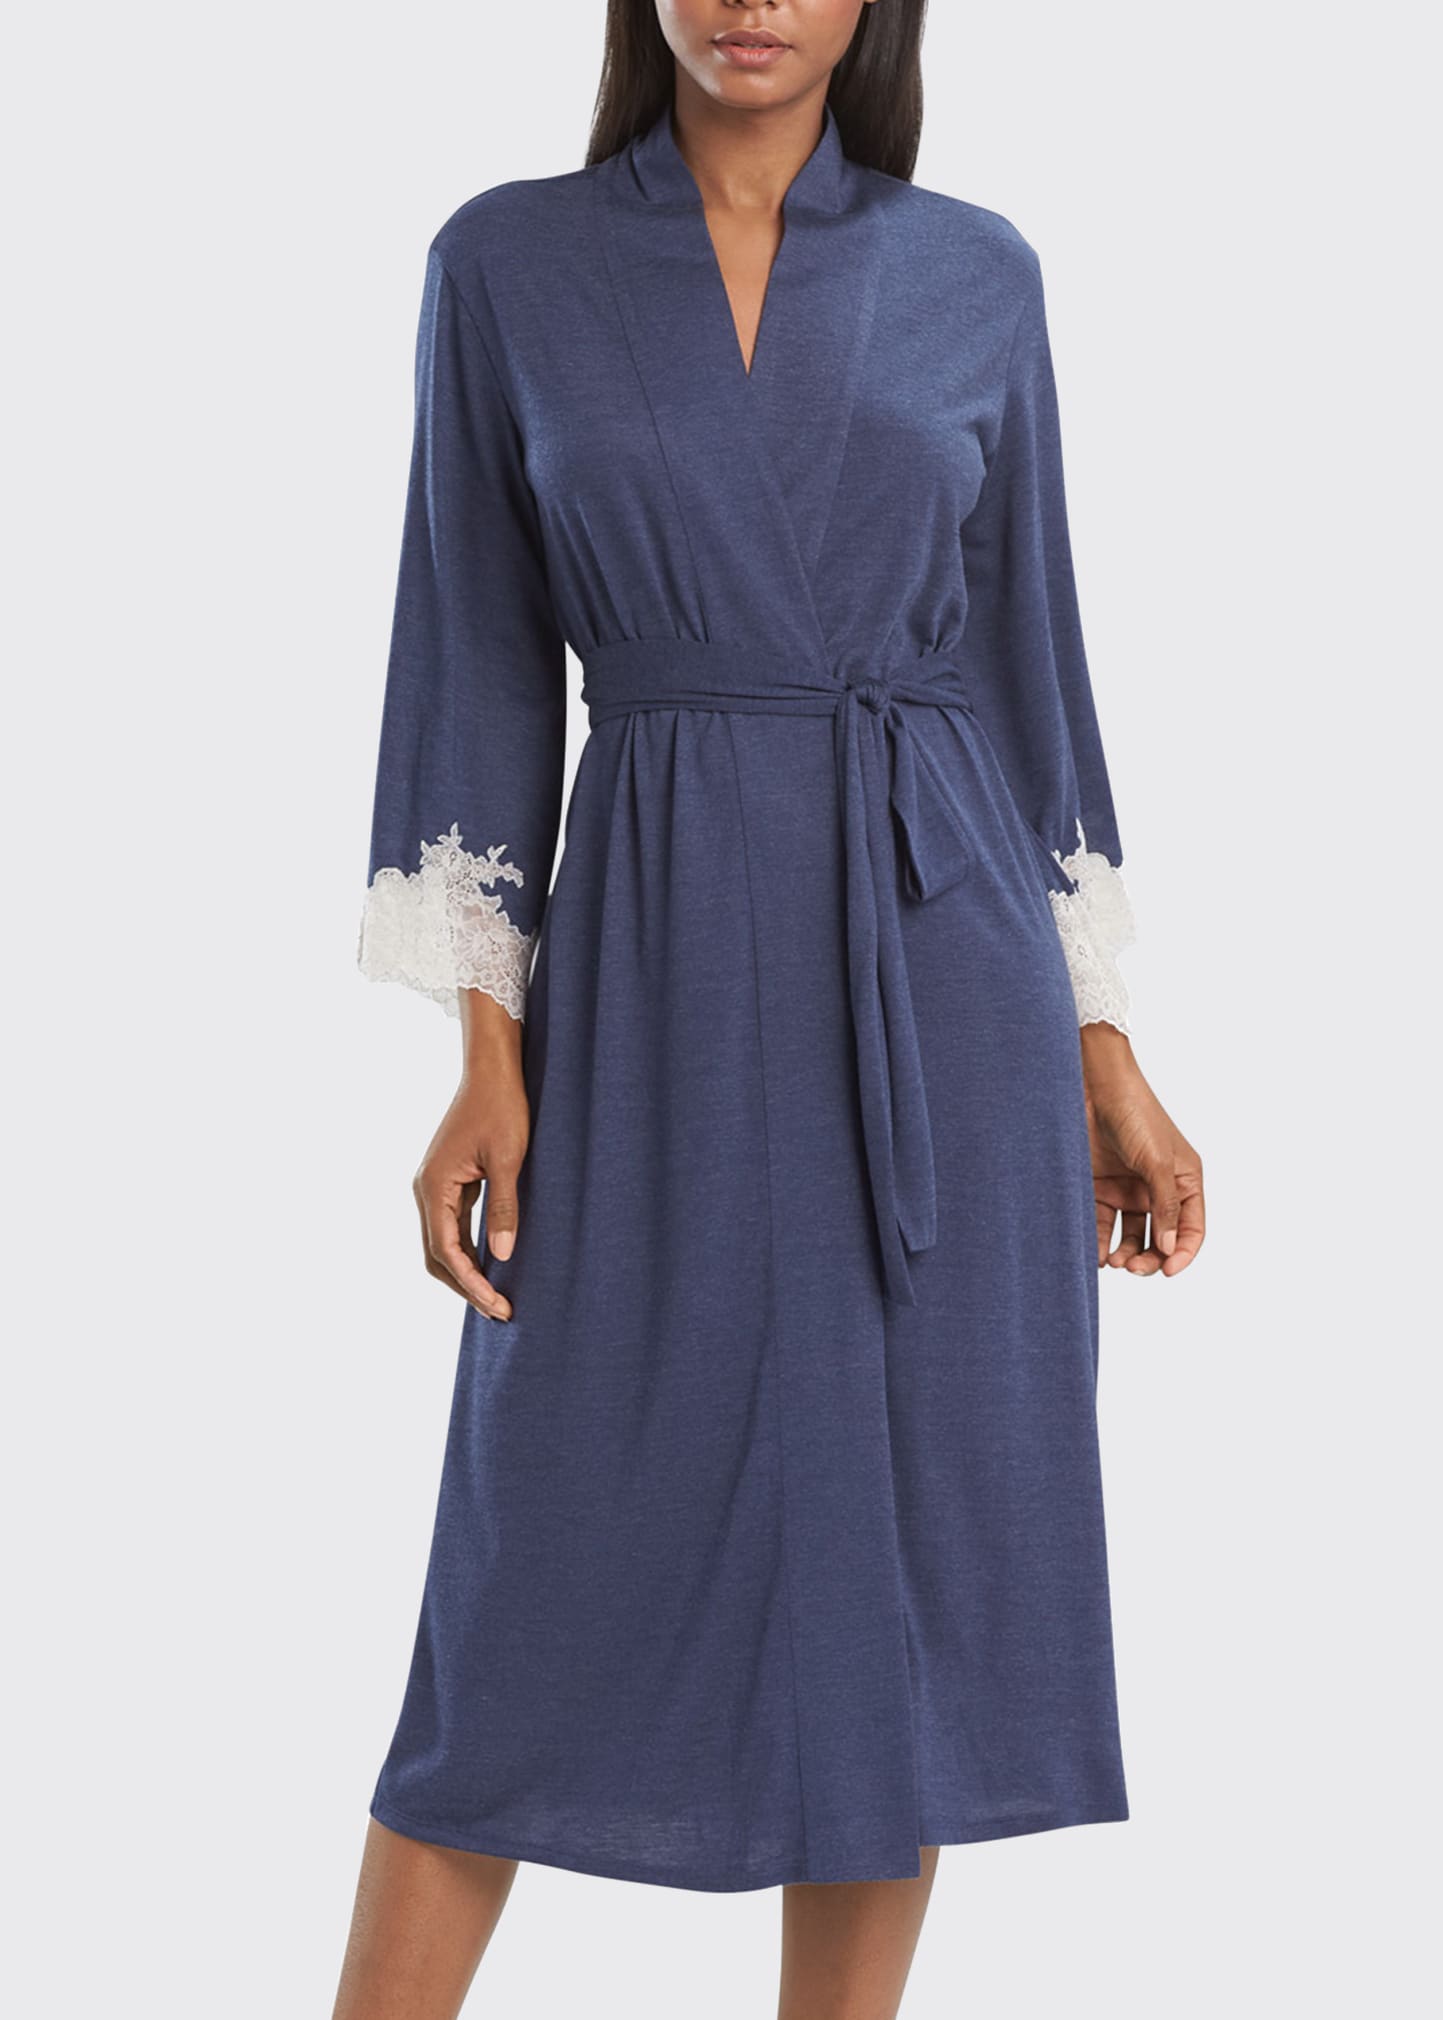 Luxe Shangri-La Knit Robe